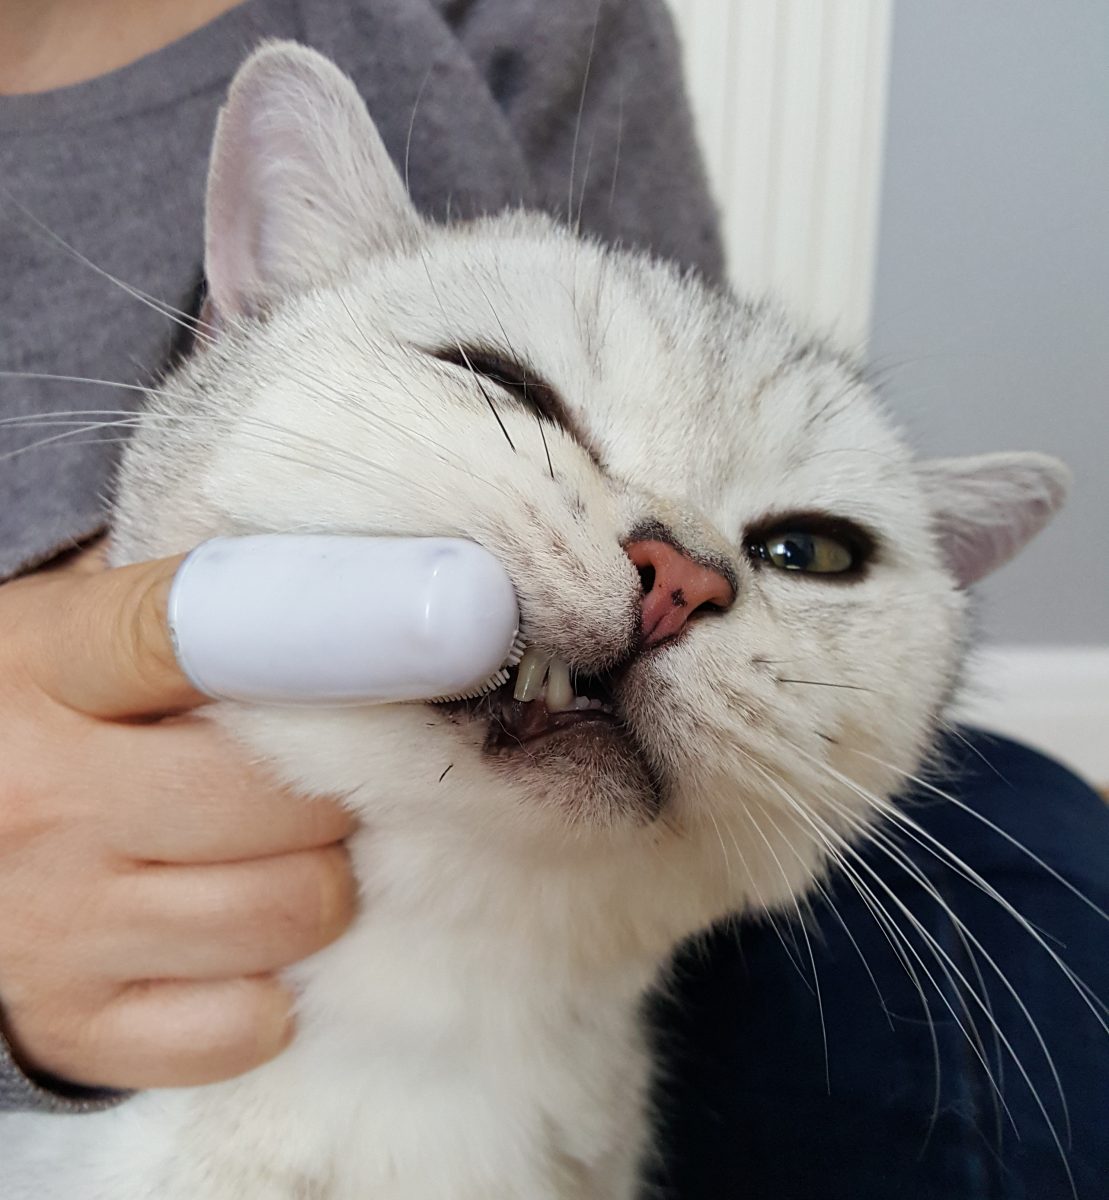 Casper has his teeth cleaned